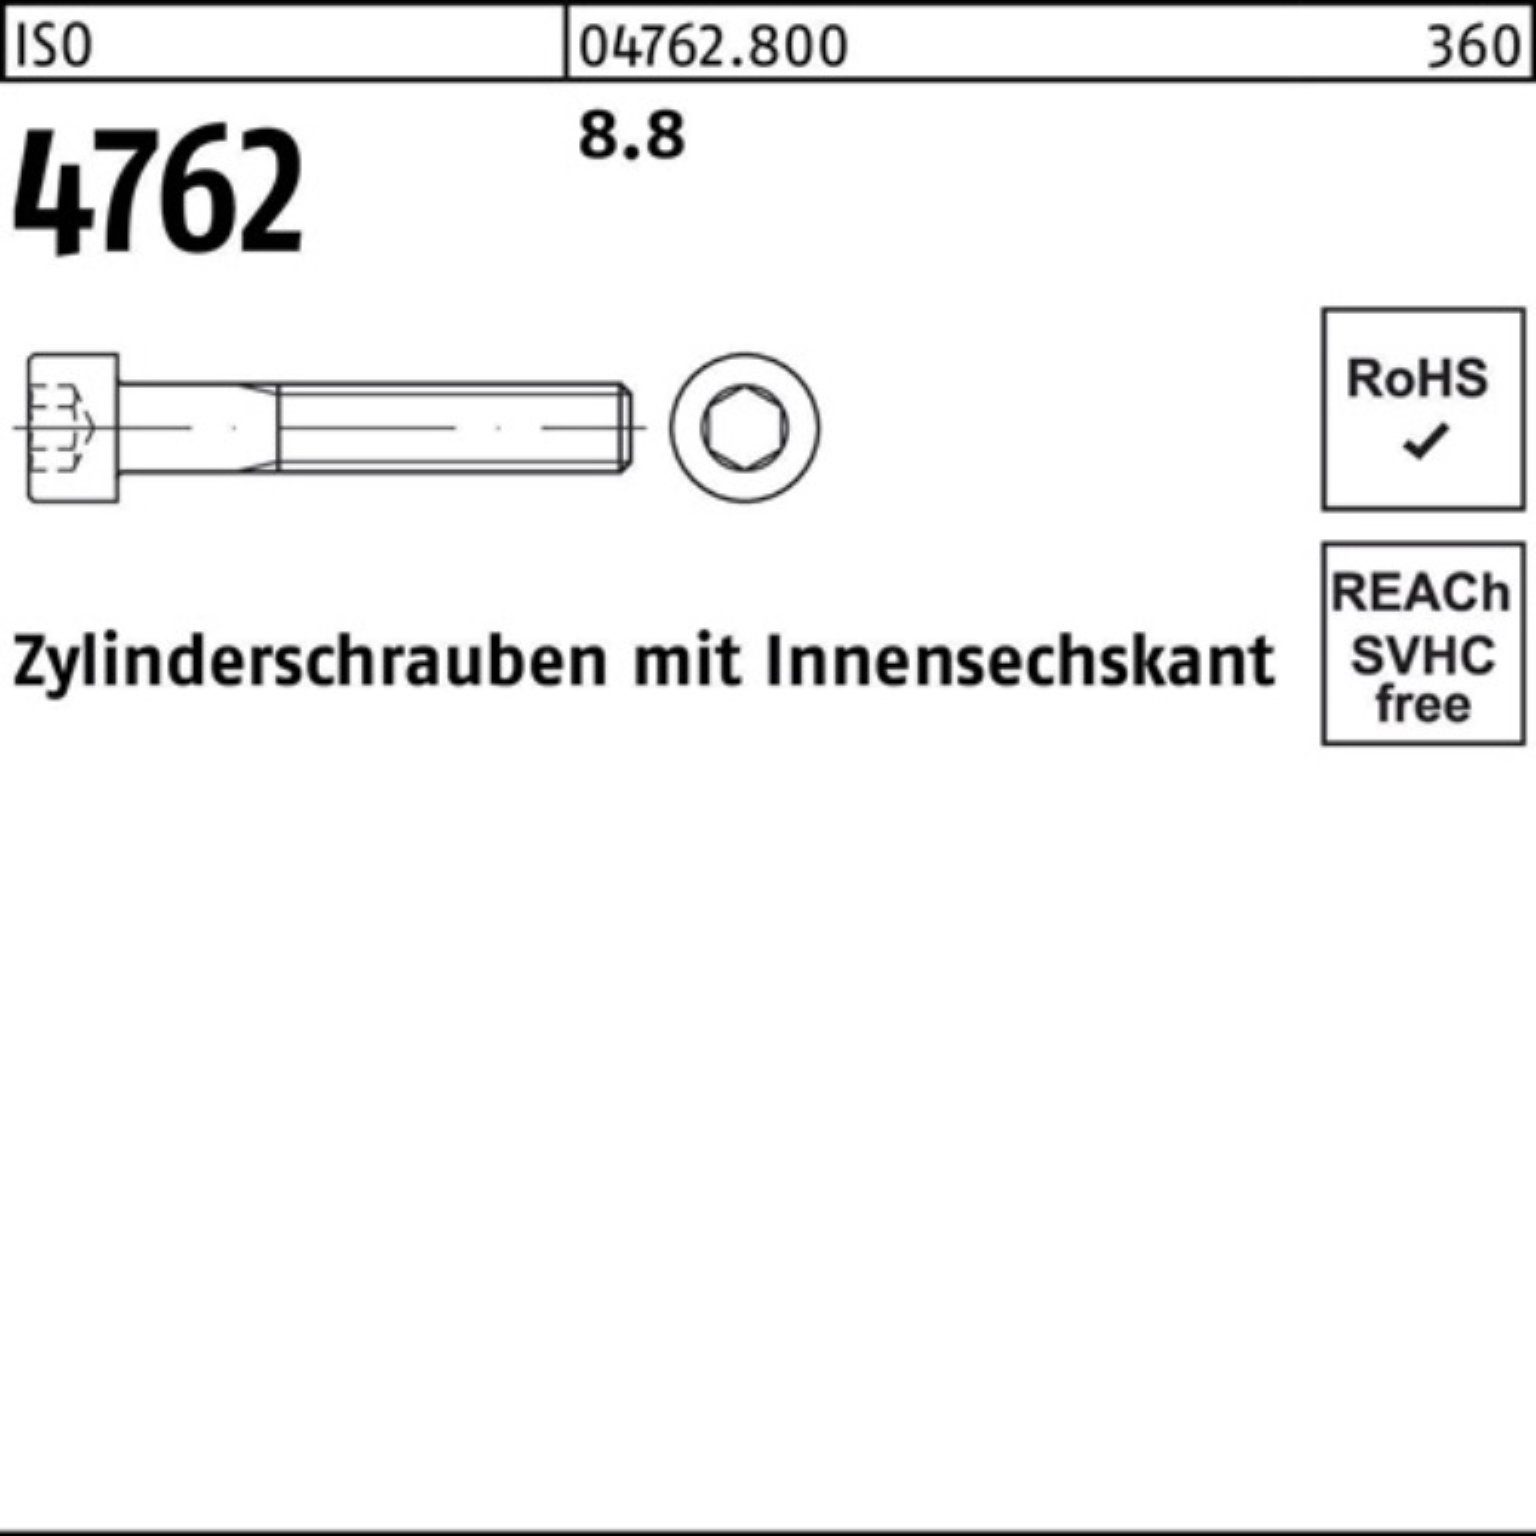 M33x Pack 8.8 ISO Zylinderschraube I Zylinderschraube 4762 1 Stück Innen-6kt Reyher 100er 130